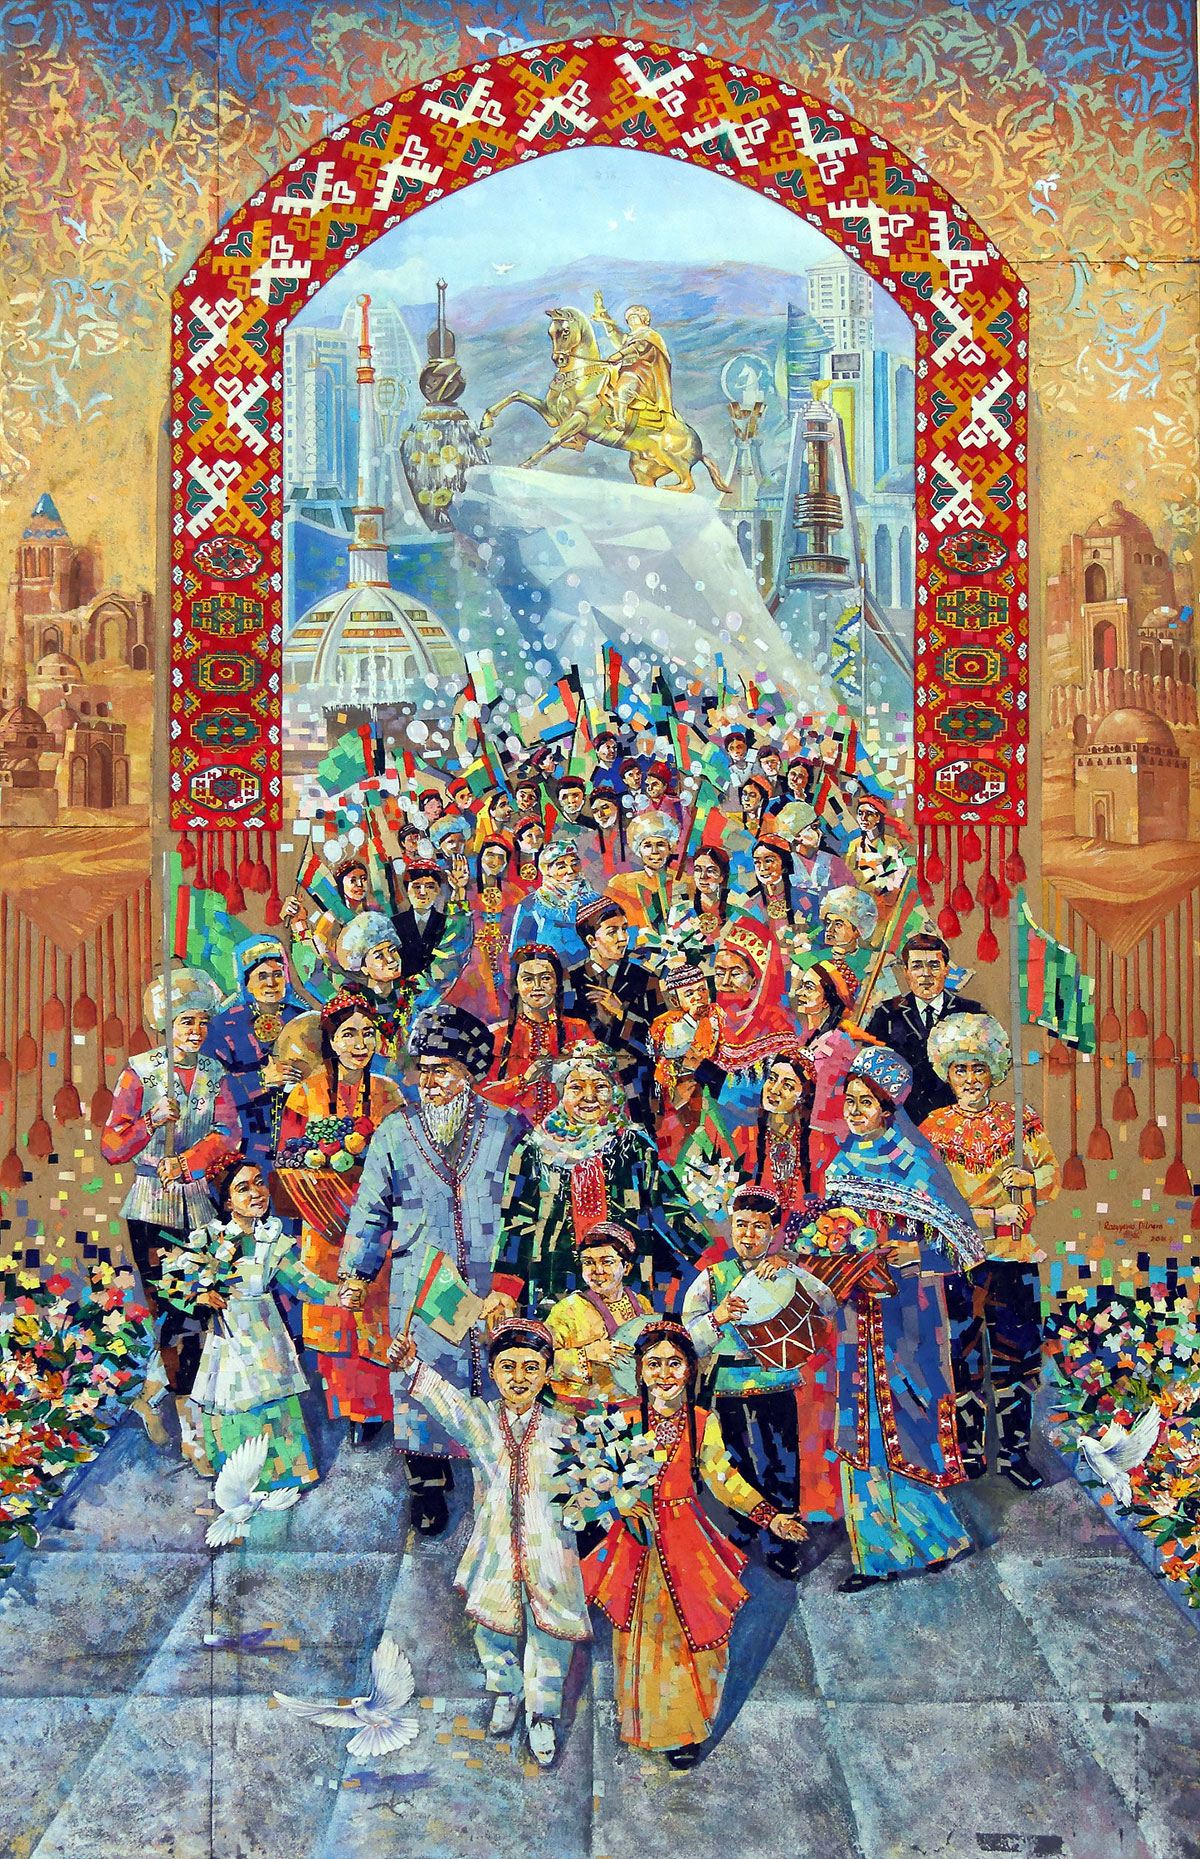 О 31-й годовщине независимости Туркменистана – в светлых радостных красках